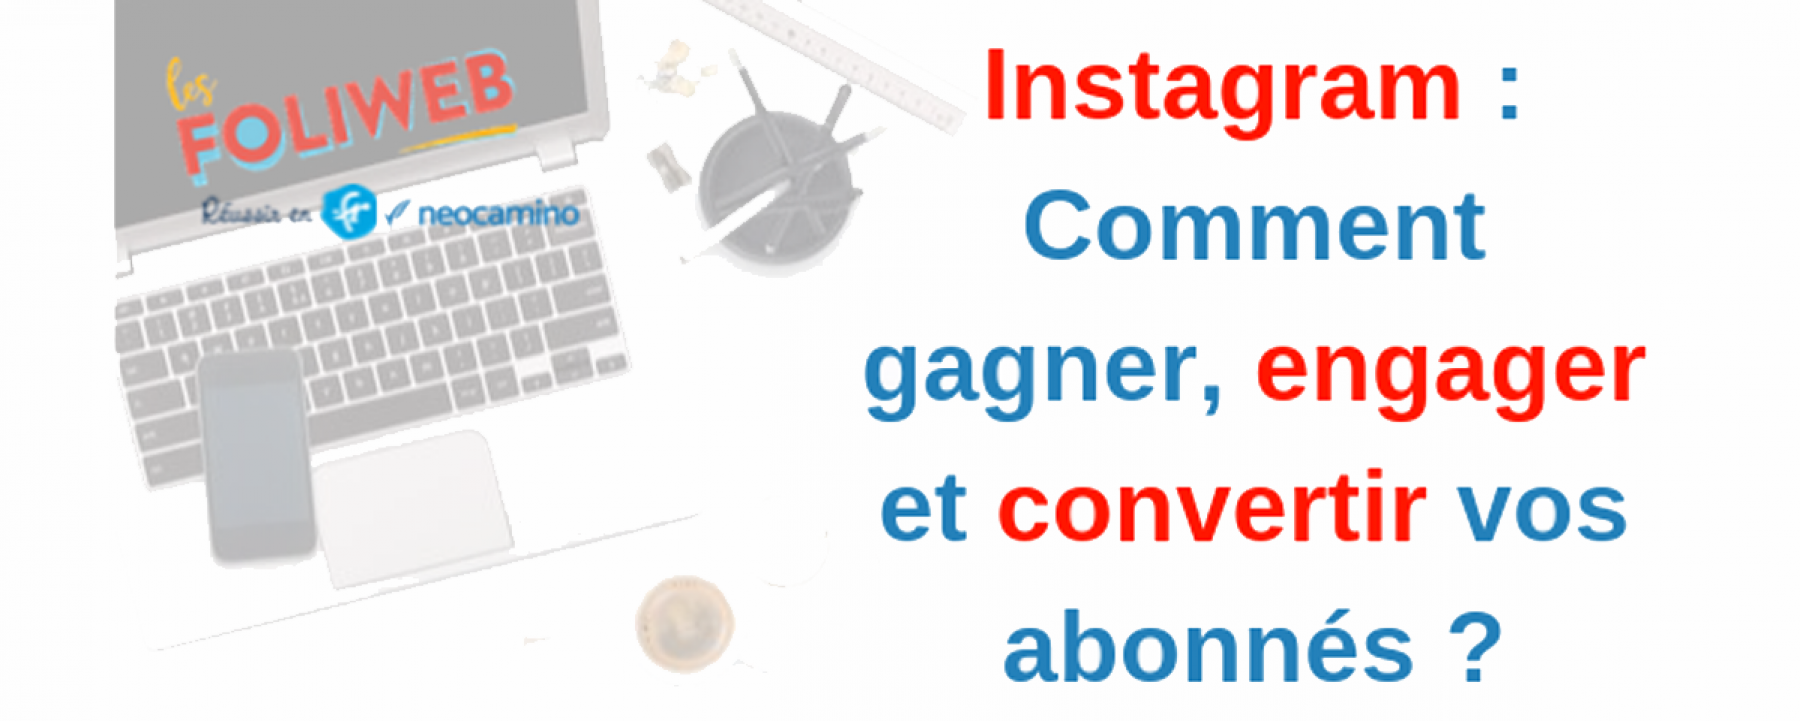 Webinar Instagram : comment gagner, engager et convertir vos abonnés ?, organisé par Les Foliweb, le 28 mai 2020